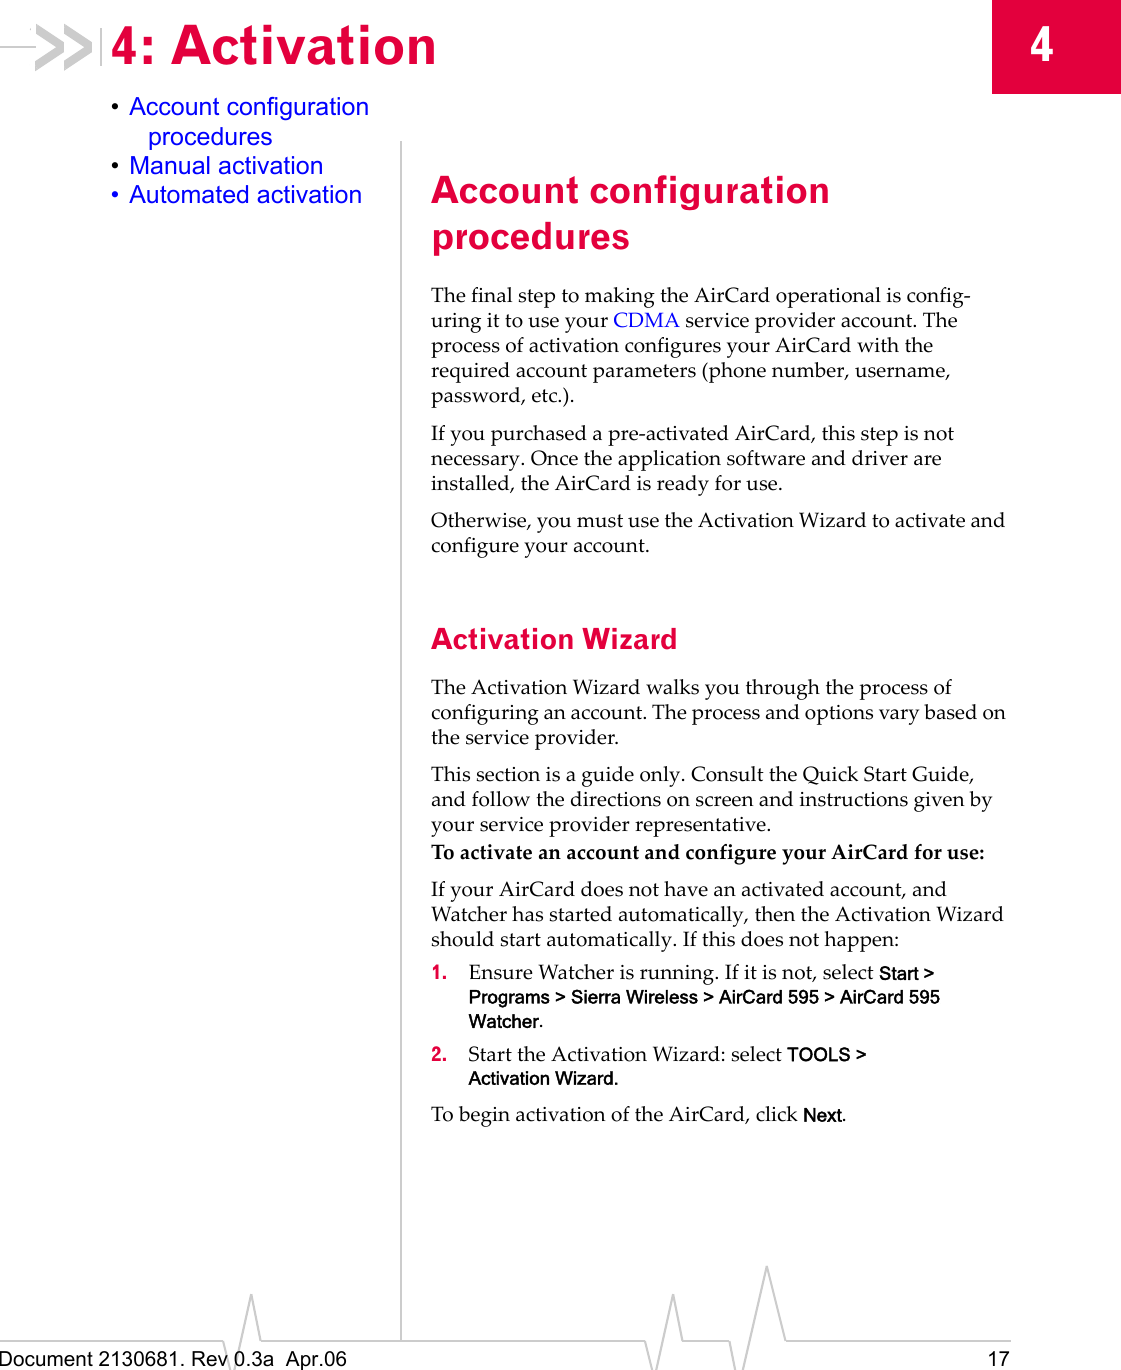 Document 2130681. Rev 0.3a  Apr.06 1744: Activation•Account configuration procedures•Manual activation• Automated activation Account configuration proceduresTheȱfinalȱstepȱtoȱmakingȱtheȱAirCardȱoperationalȱisȱconfigȬuringȱitȱtoȱuseȱyourȱCDMAȱserviceȱproviderȱaccount.ȱTheȱprocessȱofȱactivationȱconfiguresȱyourȱAirCardȱwithȱtheȱrequiredȱaccountȱparametersȱ(phoneȱnumber,ȱusername,ȱpassword,ȱetc.).IfȱyouȱpurchasedȱaȱpreȬactivatedȱAirCard,ȱthisȱstepȱisȱnotȱnecessary.ȱOnceȱtheȱapplicationȱsoftwareȱandȱdriverȱareȱinstalled,ȱtheȱAirCardȱisȱreadyȱforȱuse.Otherwise,ȱyouȱmustȱuseȱtheȱActivationȱWizardȱtoȱactivateȱandȱconfigureȱyourȱaccount.Activation WizardTheȱActivationȱWizardȱwalksȱyouȱthroughȱtheȱprocessȱofȱconfiguringȱanȱaccount.ȱTheȱprocessȱandȱoptionsȱvaryȱbasedȱonȱtheȱserviceȱprovider.Thisȱsectionȱisȱaȱguideȱonly.ȱConsultȱtheȱQuickȱStartȱGuide,ȱandȱfollowȱtheȱdirectionsȱonȱscreenȱandȱinstructionsȱgivenȱbyȱyourȱserviceȱproviderȱrepresentative.ToȱactivateȱanȱaccountȱandȱconfigureȱyourȱAirCardȱforȱuse:IfȱyourȱAirCardȱdoesȱnotȱhaveȱanȱactivatedȱaccount,ȱandȱWatcherȱhasȱstartedȱautomatically,ȱthenȱtheȱActivationȱWizardȱshouldȱstartȱautomatically.ȱIfȱthisȱdoesȱnotȱhappen:1. EnsureȱWatcherȱisȱrunning.ȱIfȱitȱisȱnot,ȱselectȱStart &gt; Programs &gt; Sierra Wireless &gt; AirCard 595 &gt; AirCard 595 Watcher.2. StartȱtheȱActivationȱWizard:ȱselectȱTOOLS &gt; Activation Wizard.ToȱbeginȱactivationȱofȱtheȱAirCard,ȱclickȱNext.